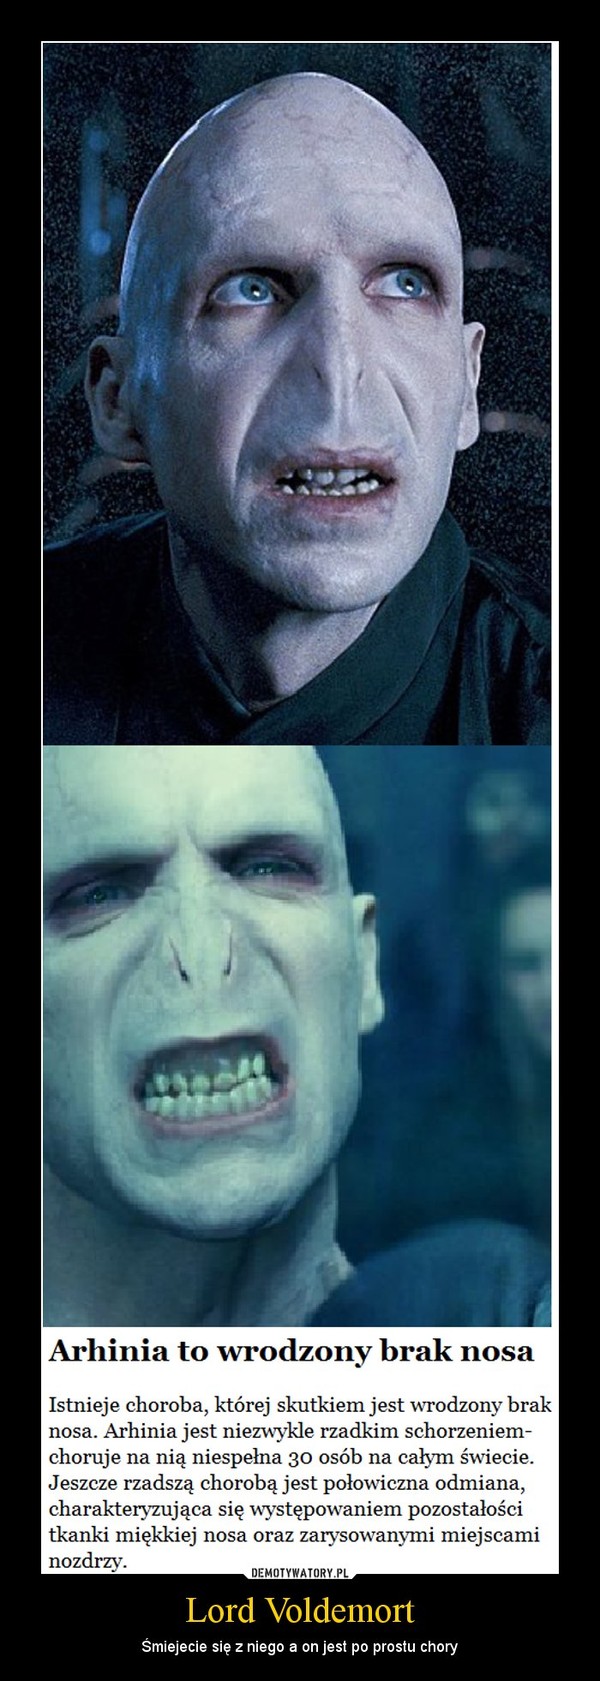 Lord Voldemort – Śmiejecie się z niego a on jest po prostu chory 